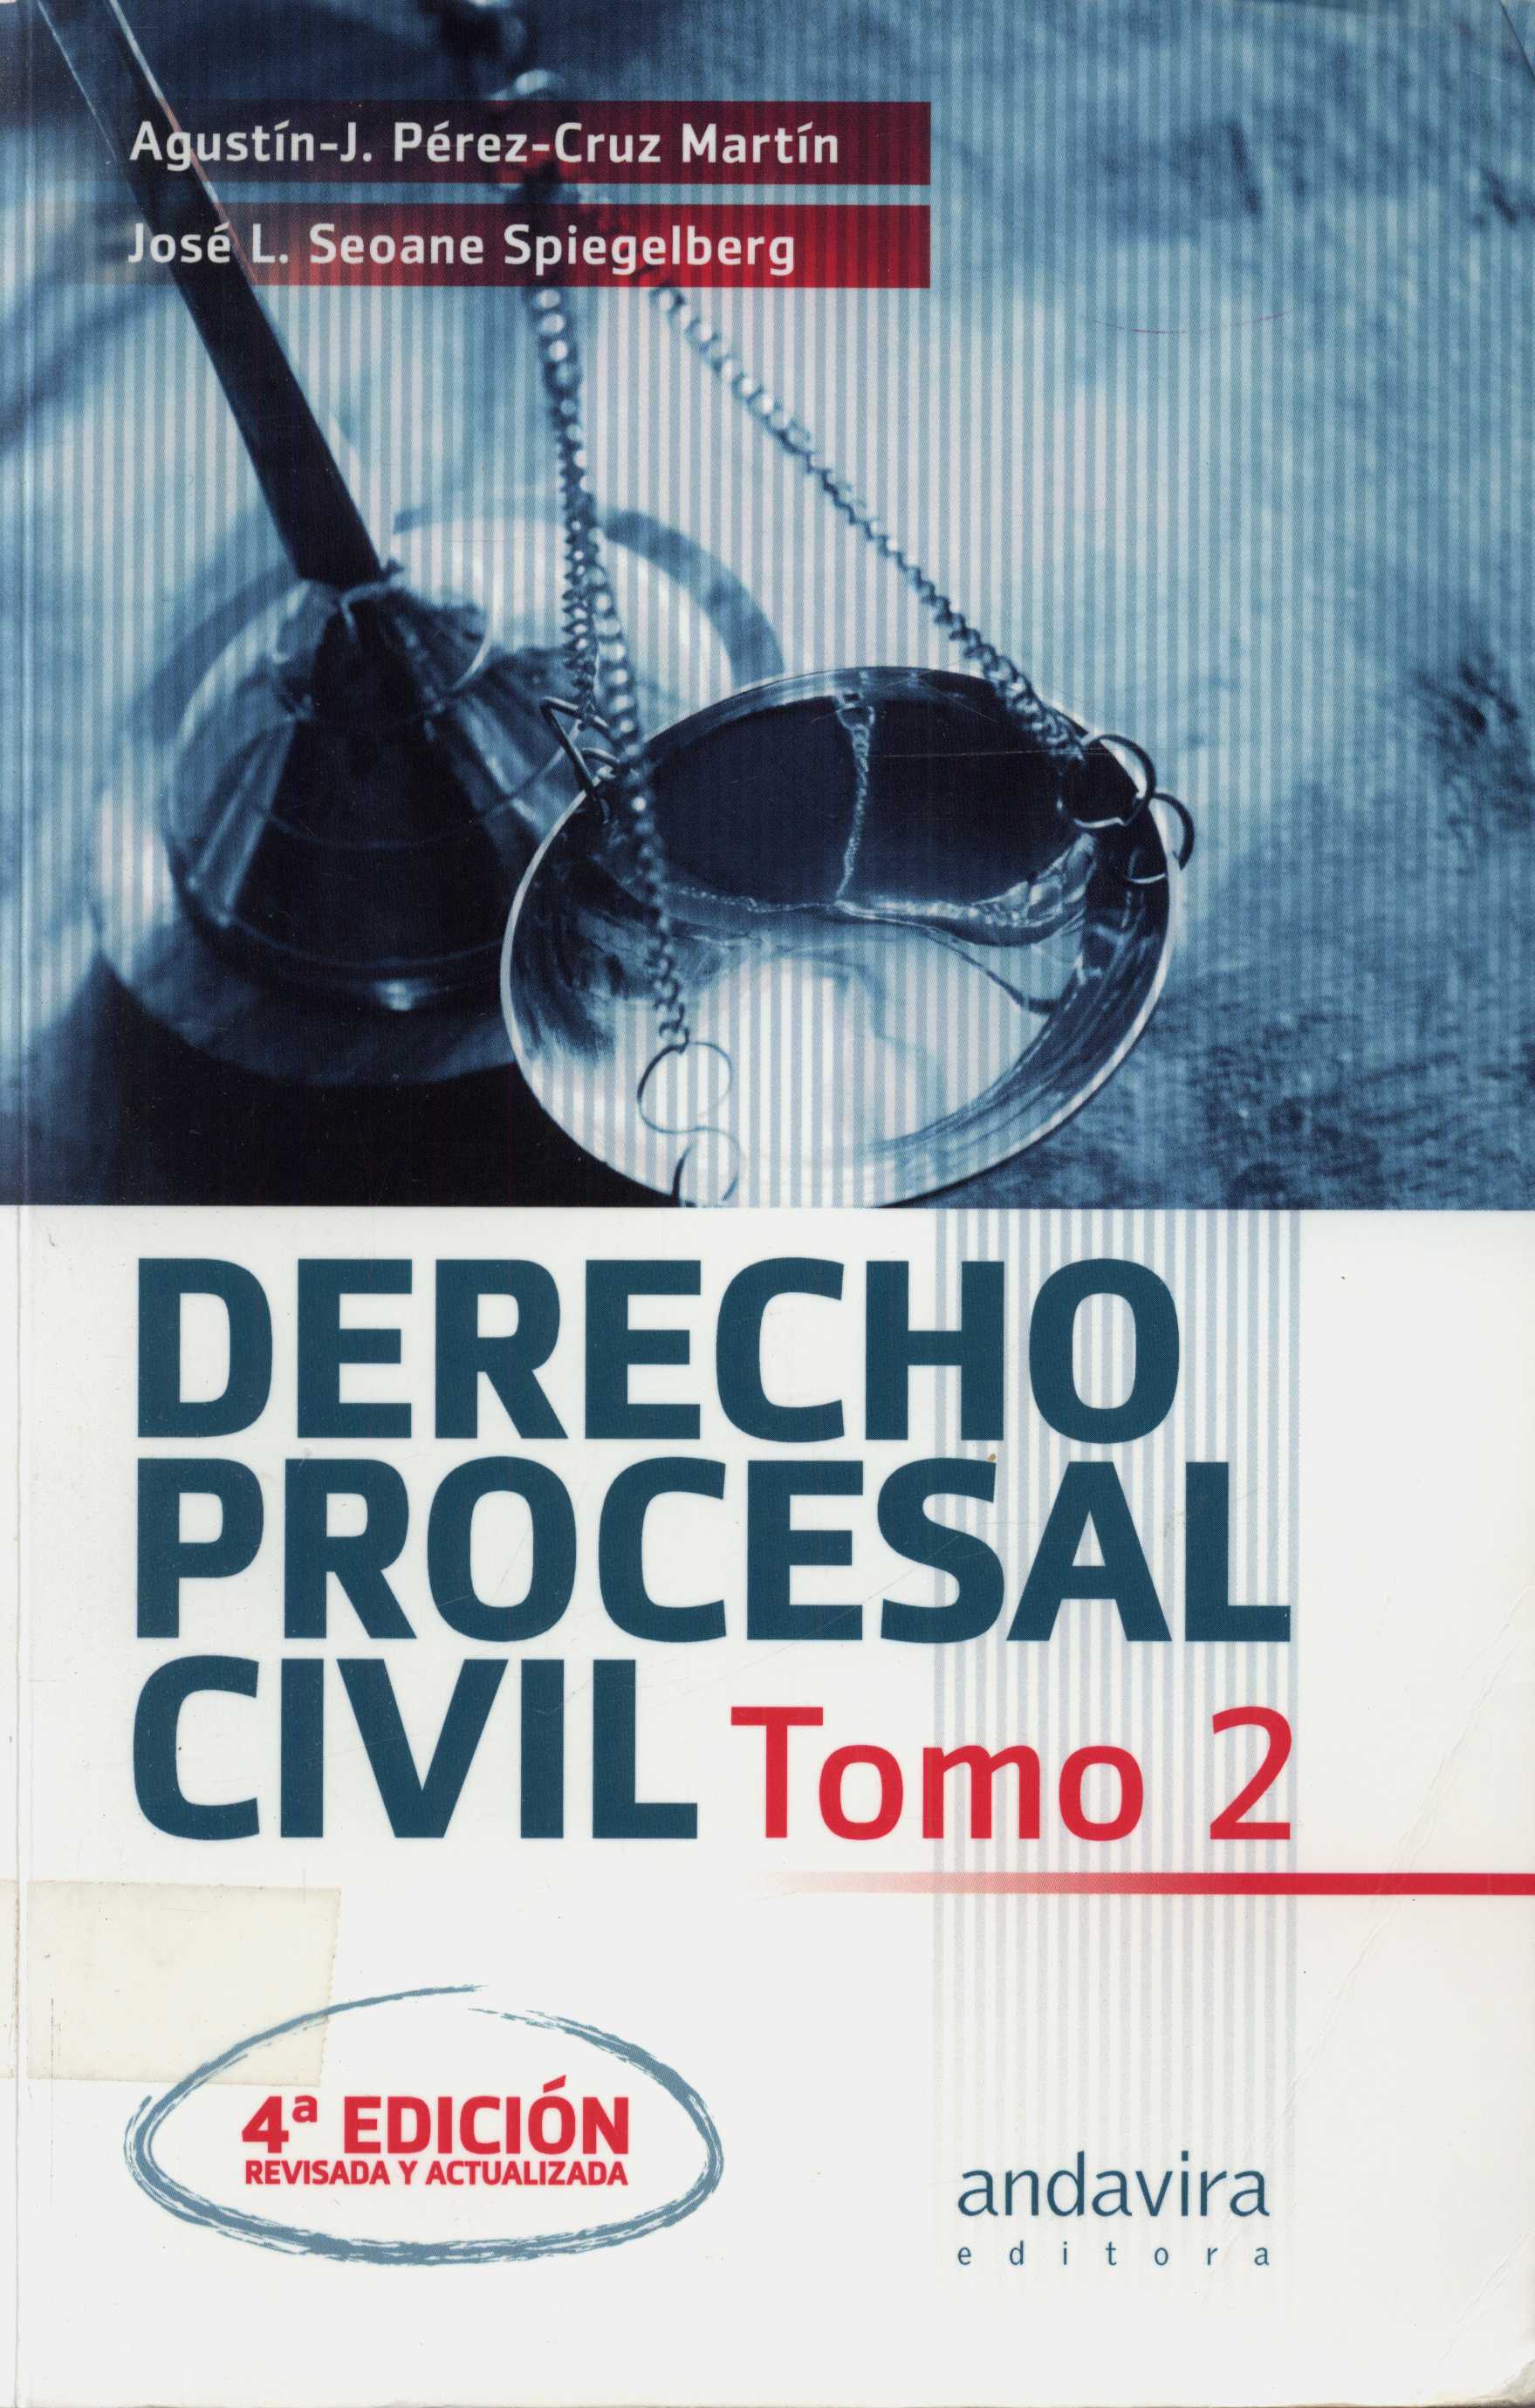 Imagen de portada del libro Derecho procesal civil